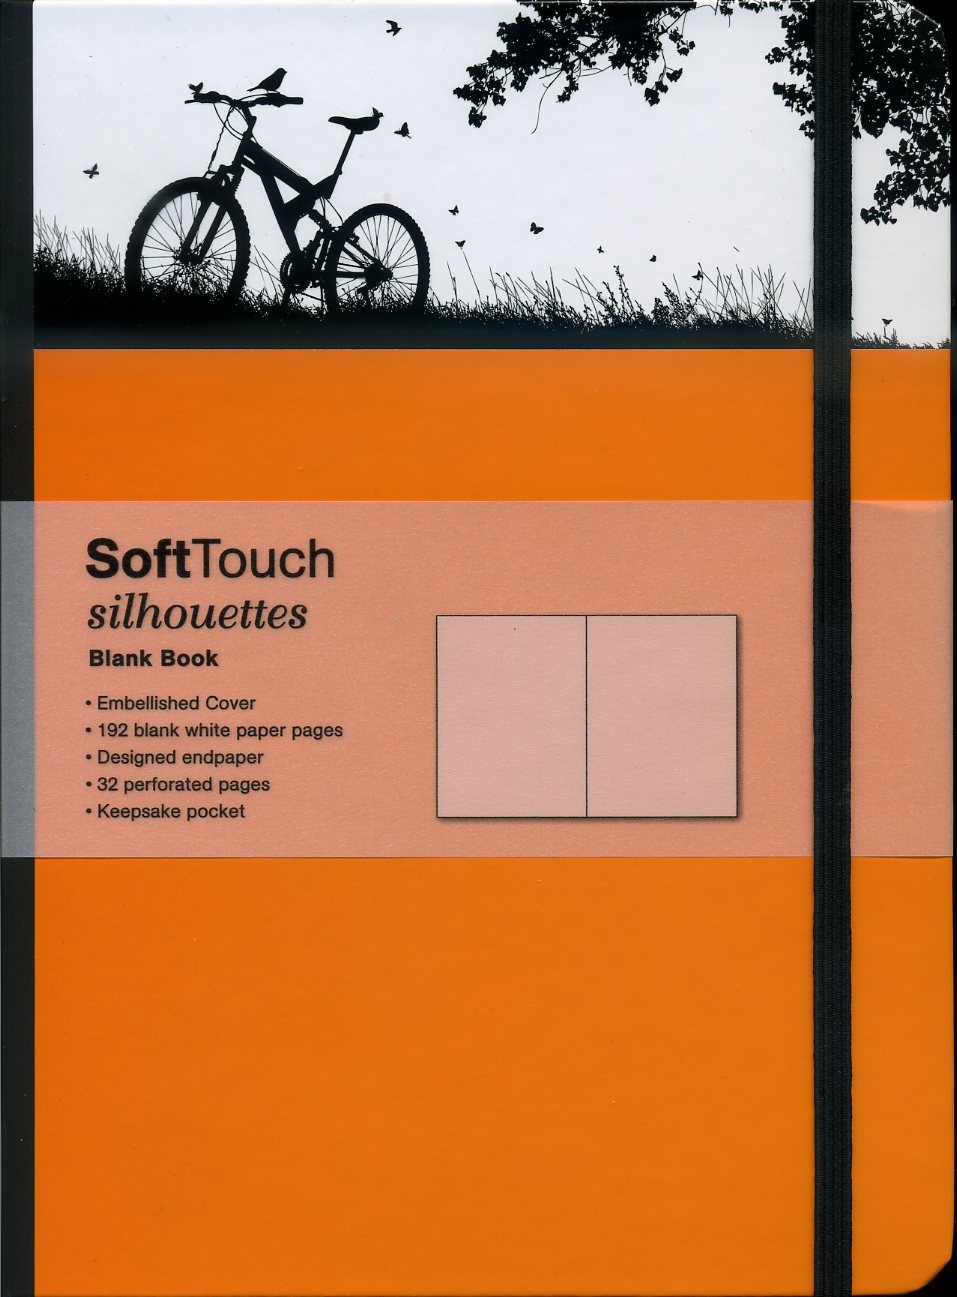 SoftTouch Silhouettes Bike 16x22cm 4002725260918  TeNeues   Reisverhalen Reisinformatie algemeen